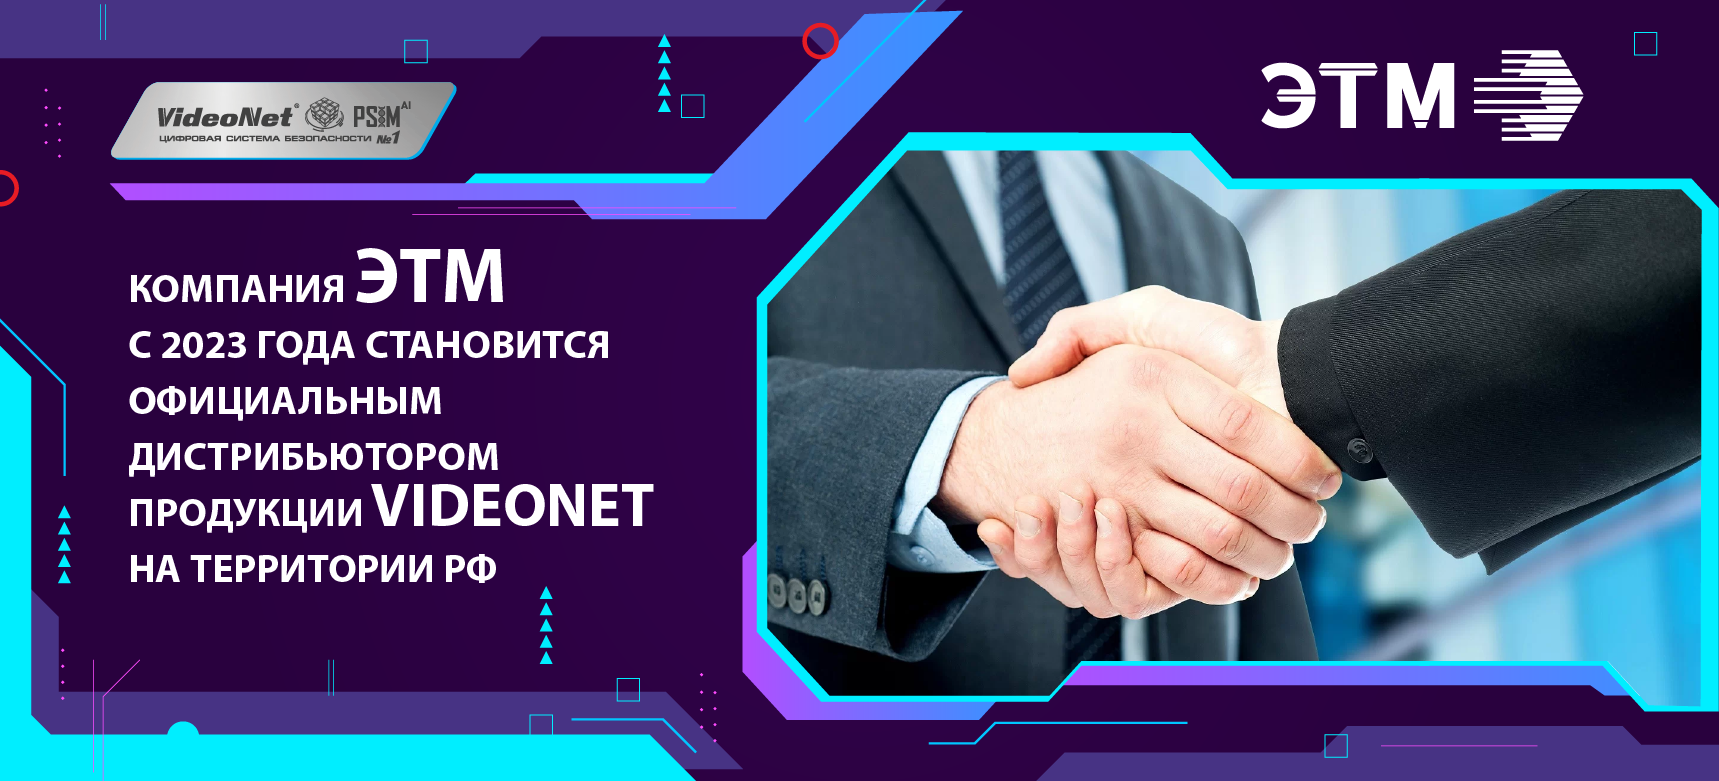 Компания ЭТМ становится официальным дистрибьютором платформы безопасности VideoNet PSIM на территории Российской Федерации